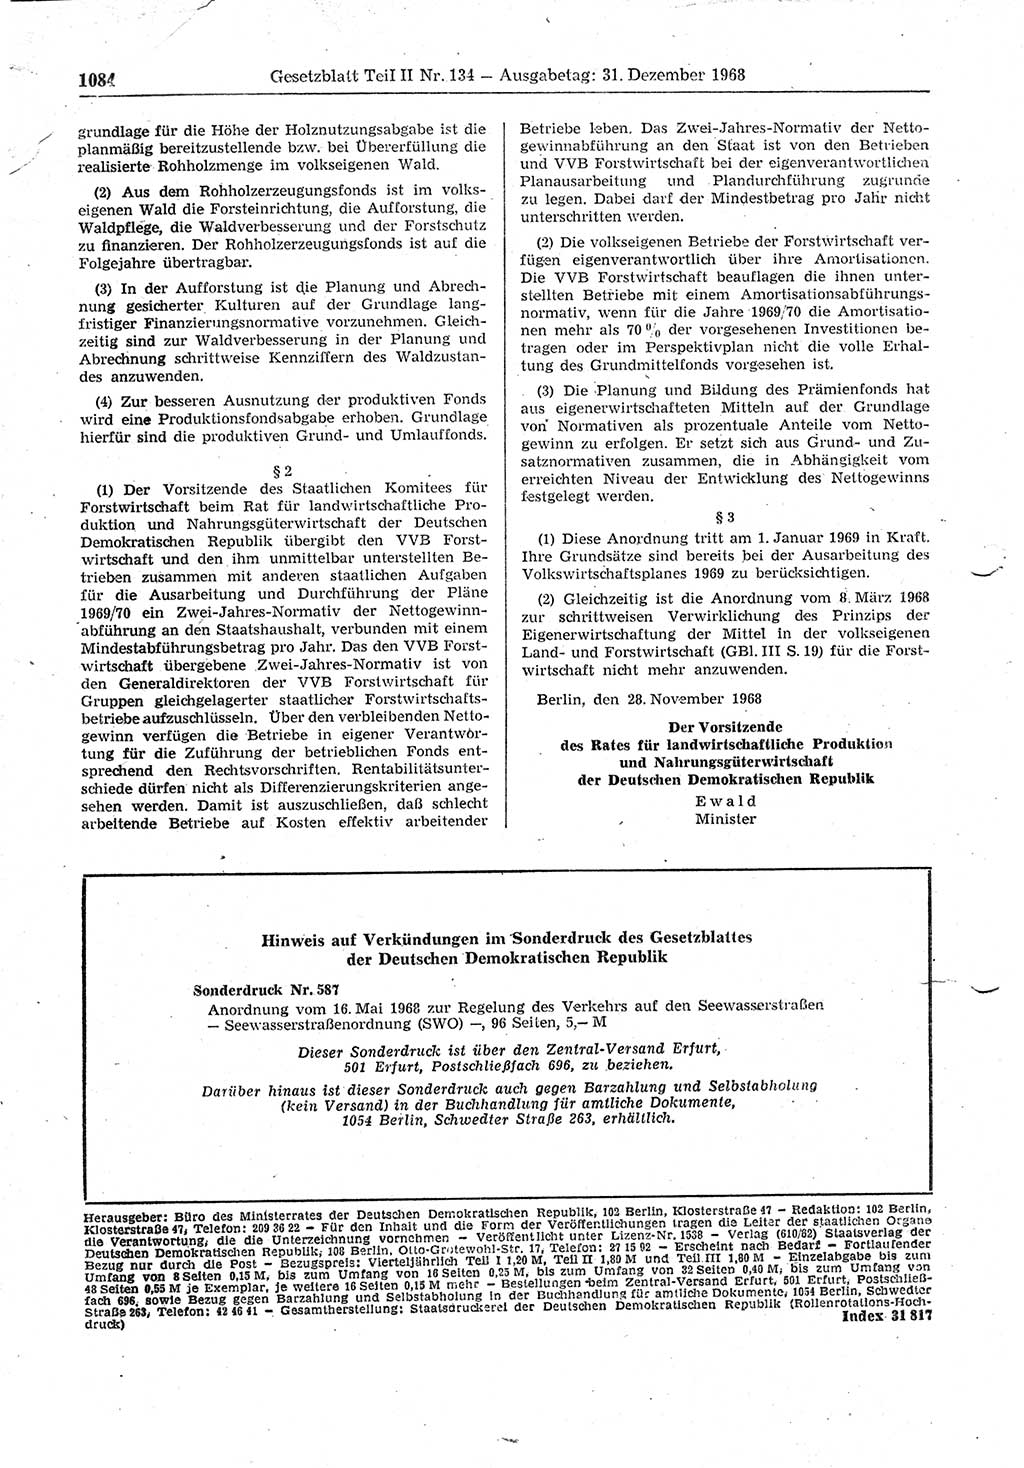 Gesetzblatt (GBl.) der Deutschen Demokratischen Republik (DDR) Teil ⅠⅠ 1968, Seite 1084 (GBl. DDR ⅠⅠ 1968, S. 1084)